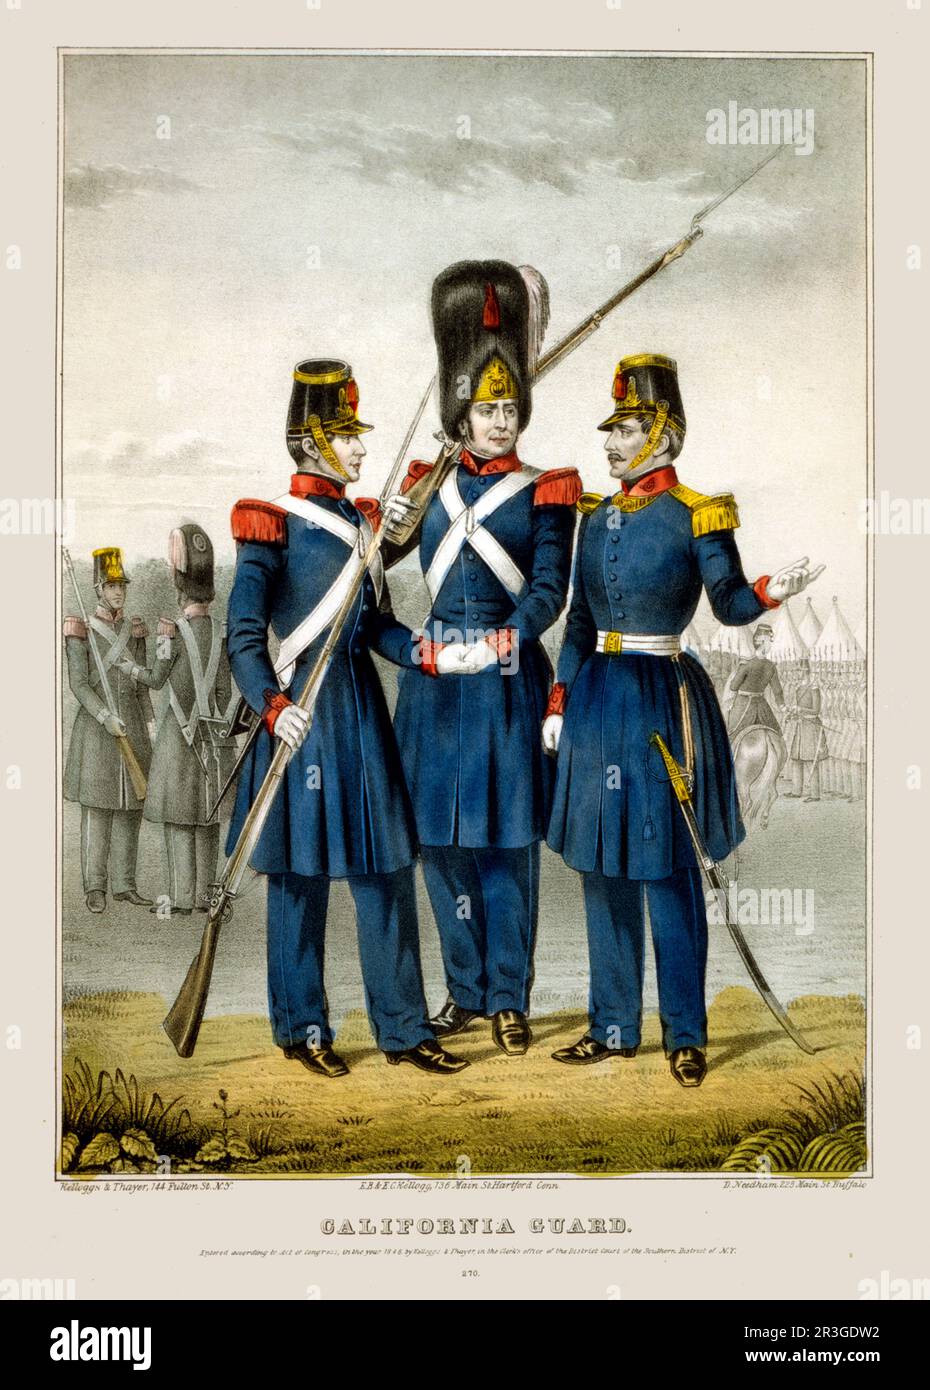 Guardia californiana. Uomini in uniforme durante la guerra messicana, 1846-1848. Foto Stock